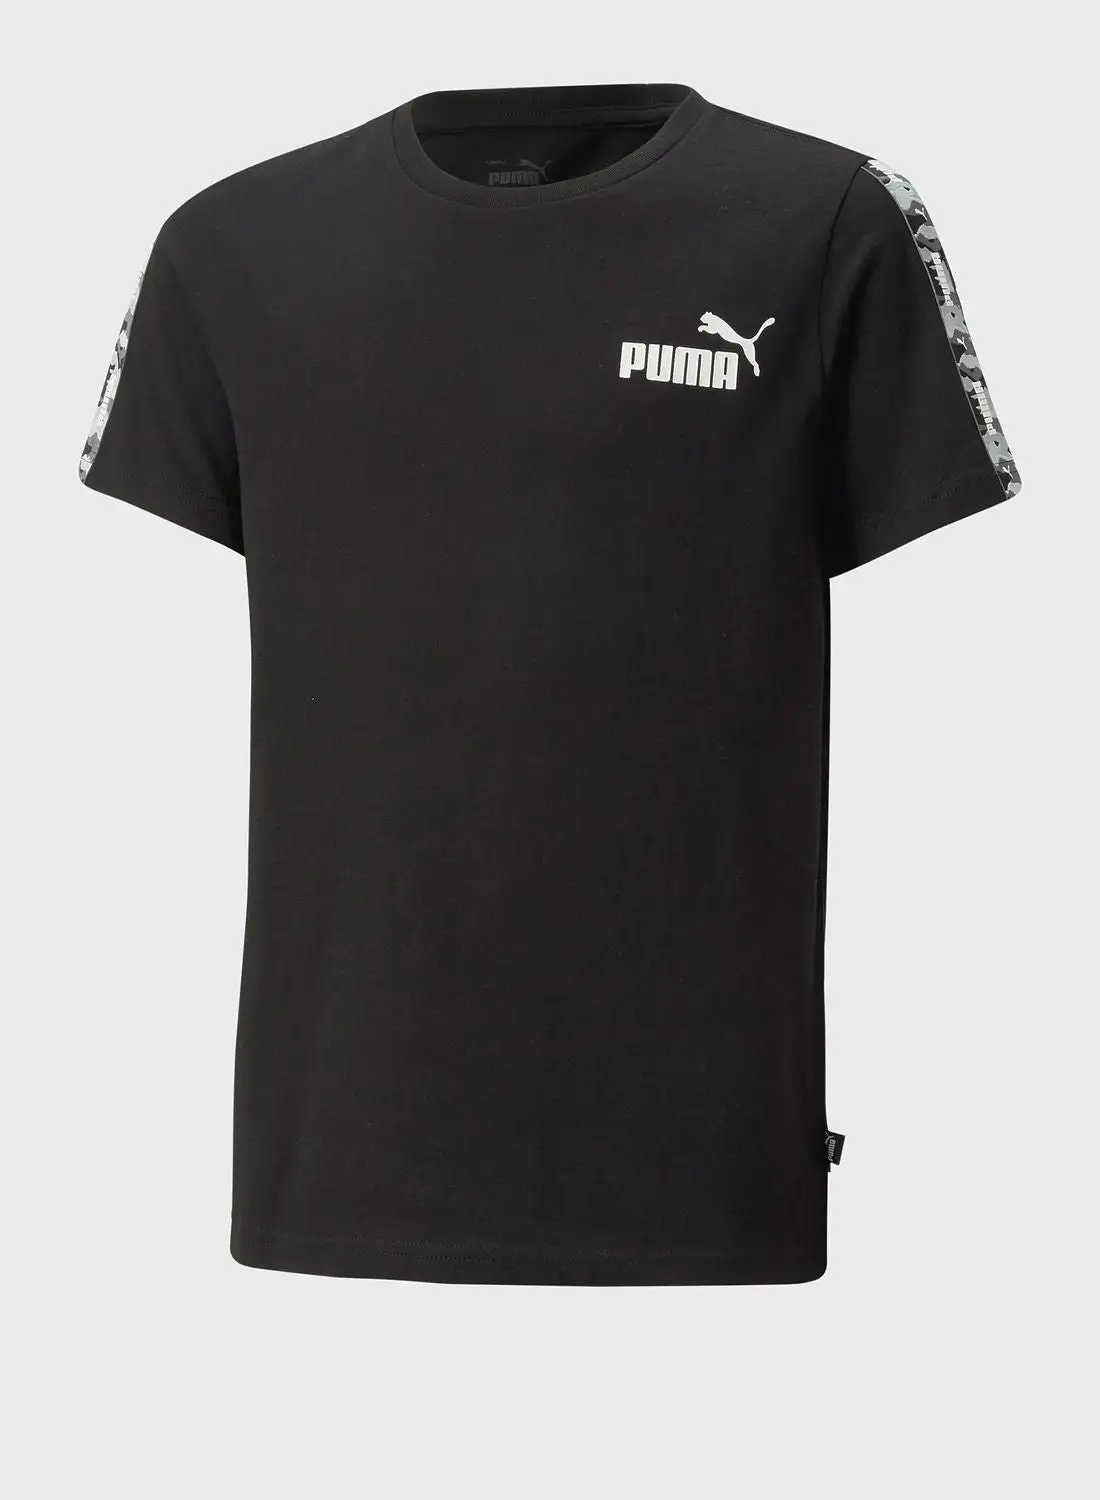 PUMA Youth Essential Tape Camo T-Shirt